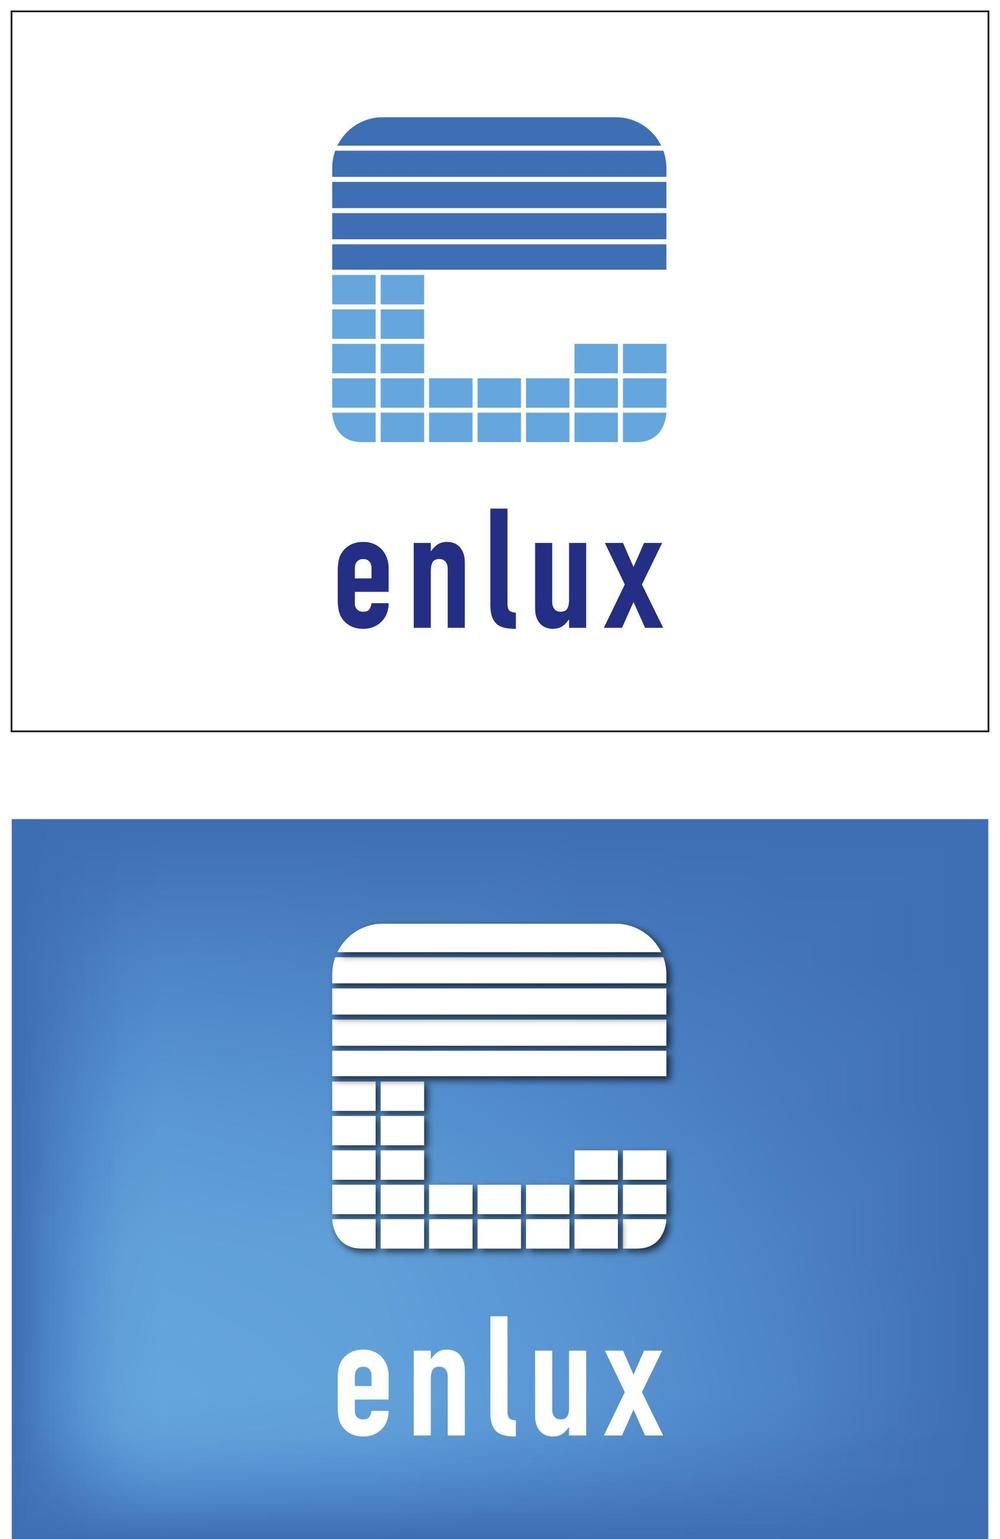 株式会社enlux-001 2.jpg